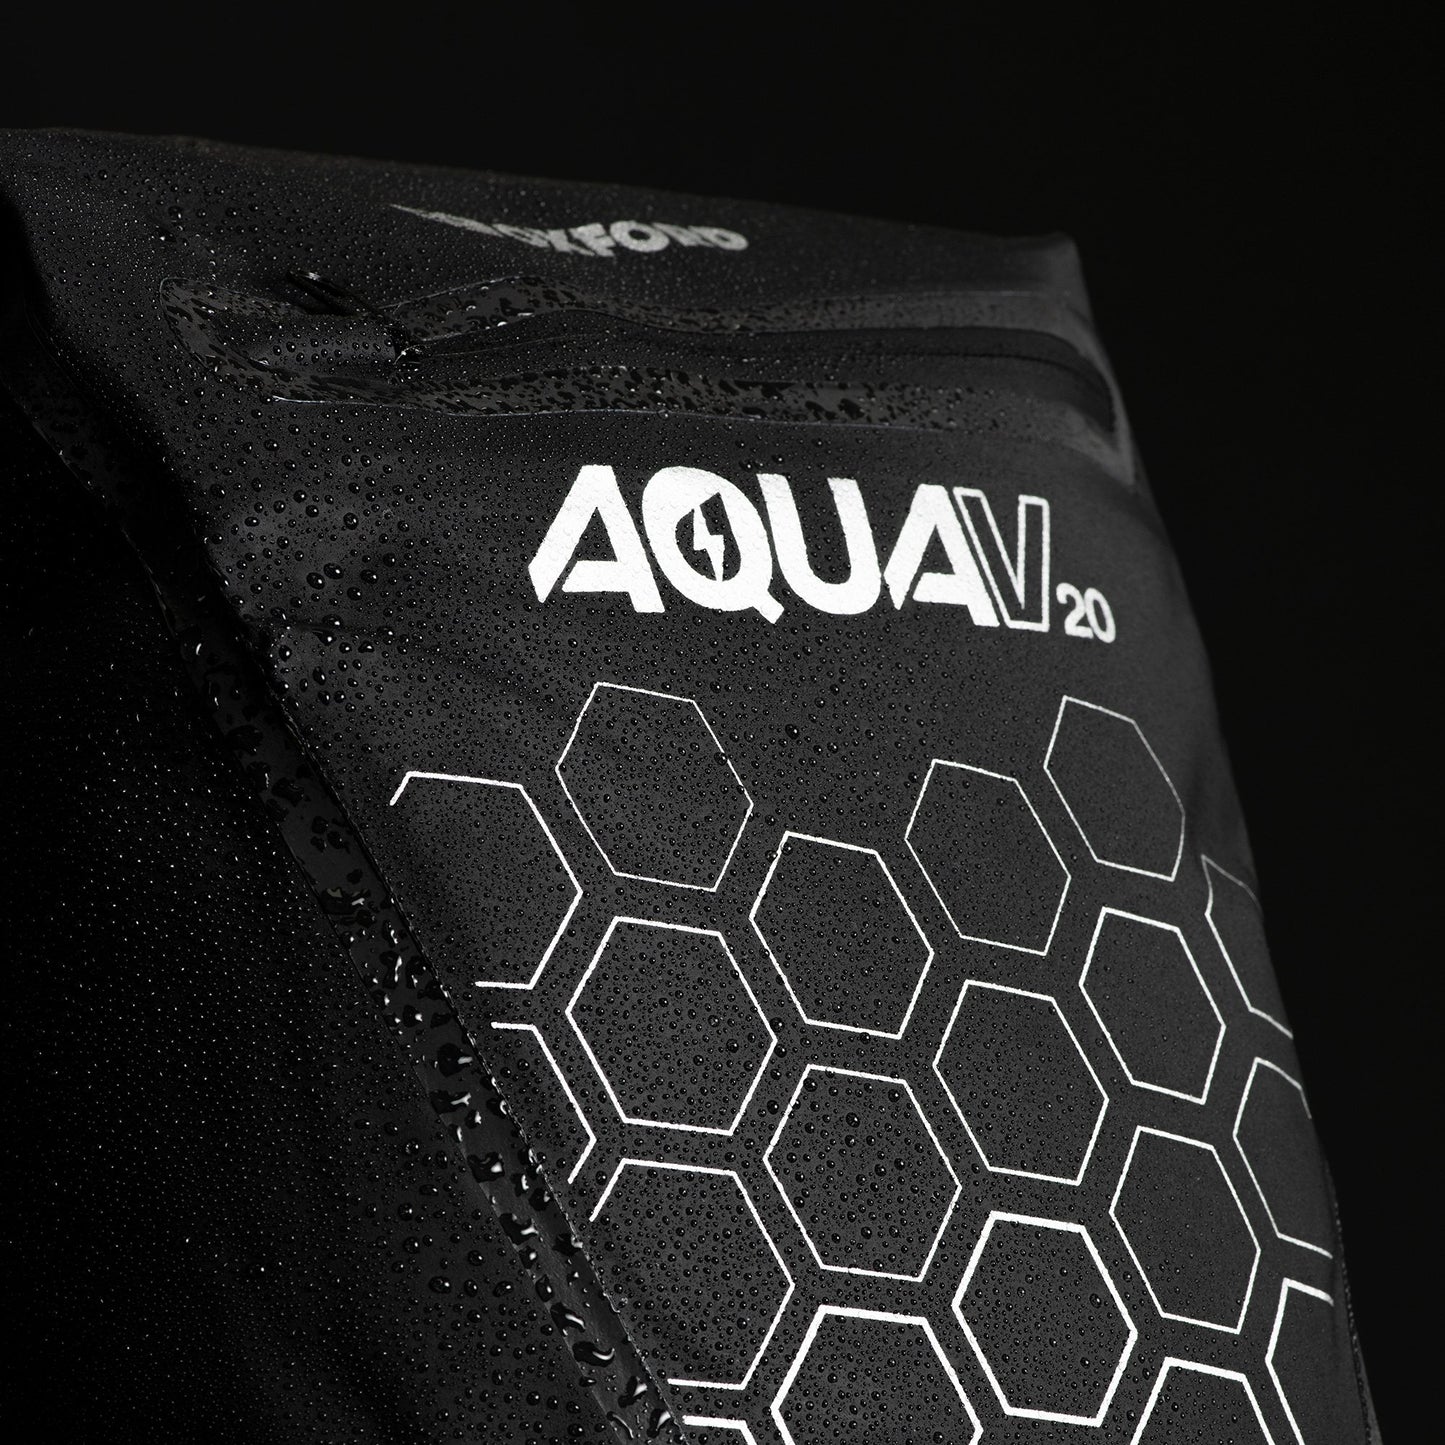 Aqua V 20 Backpack